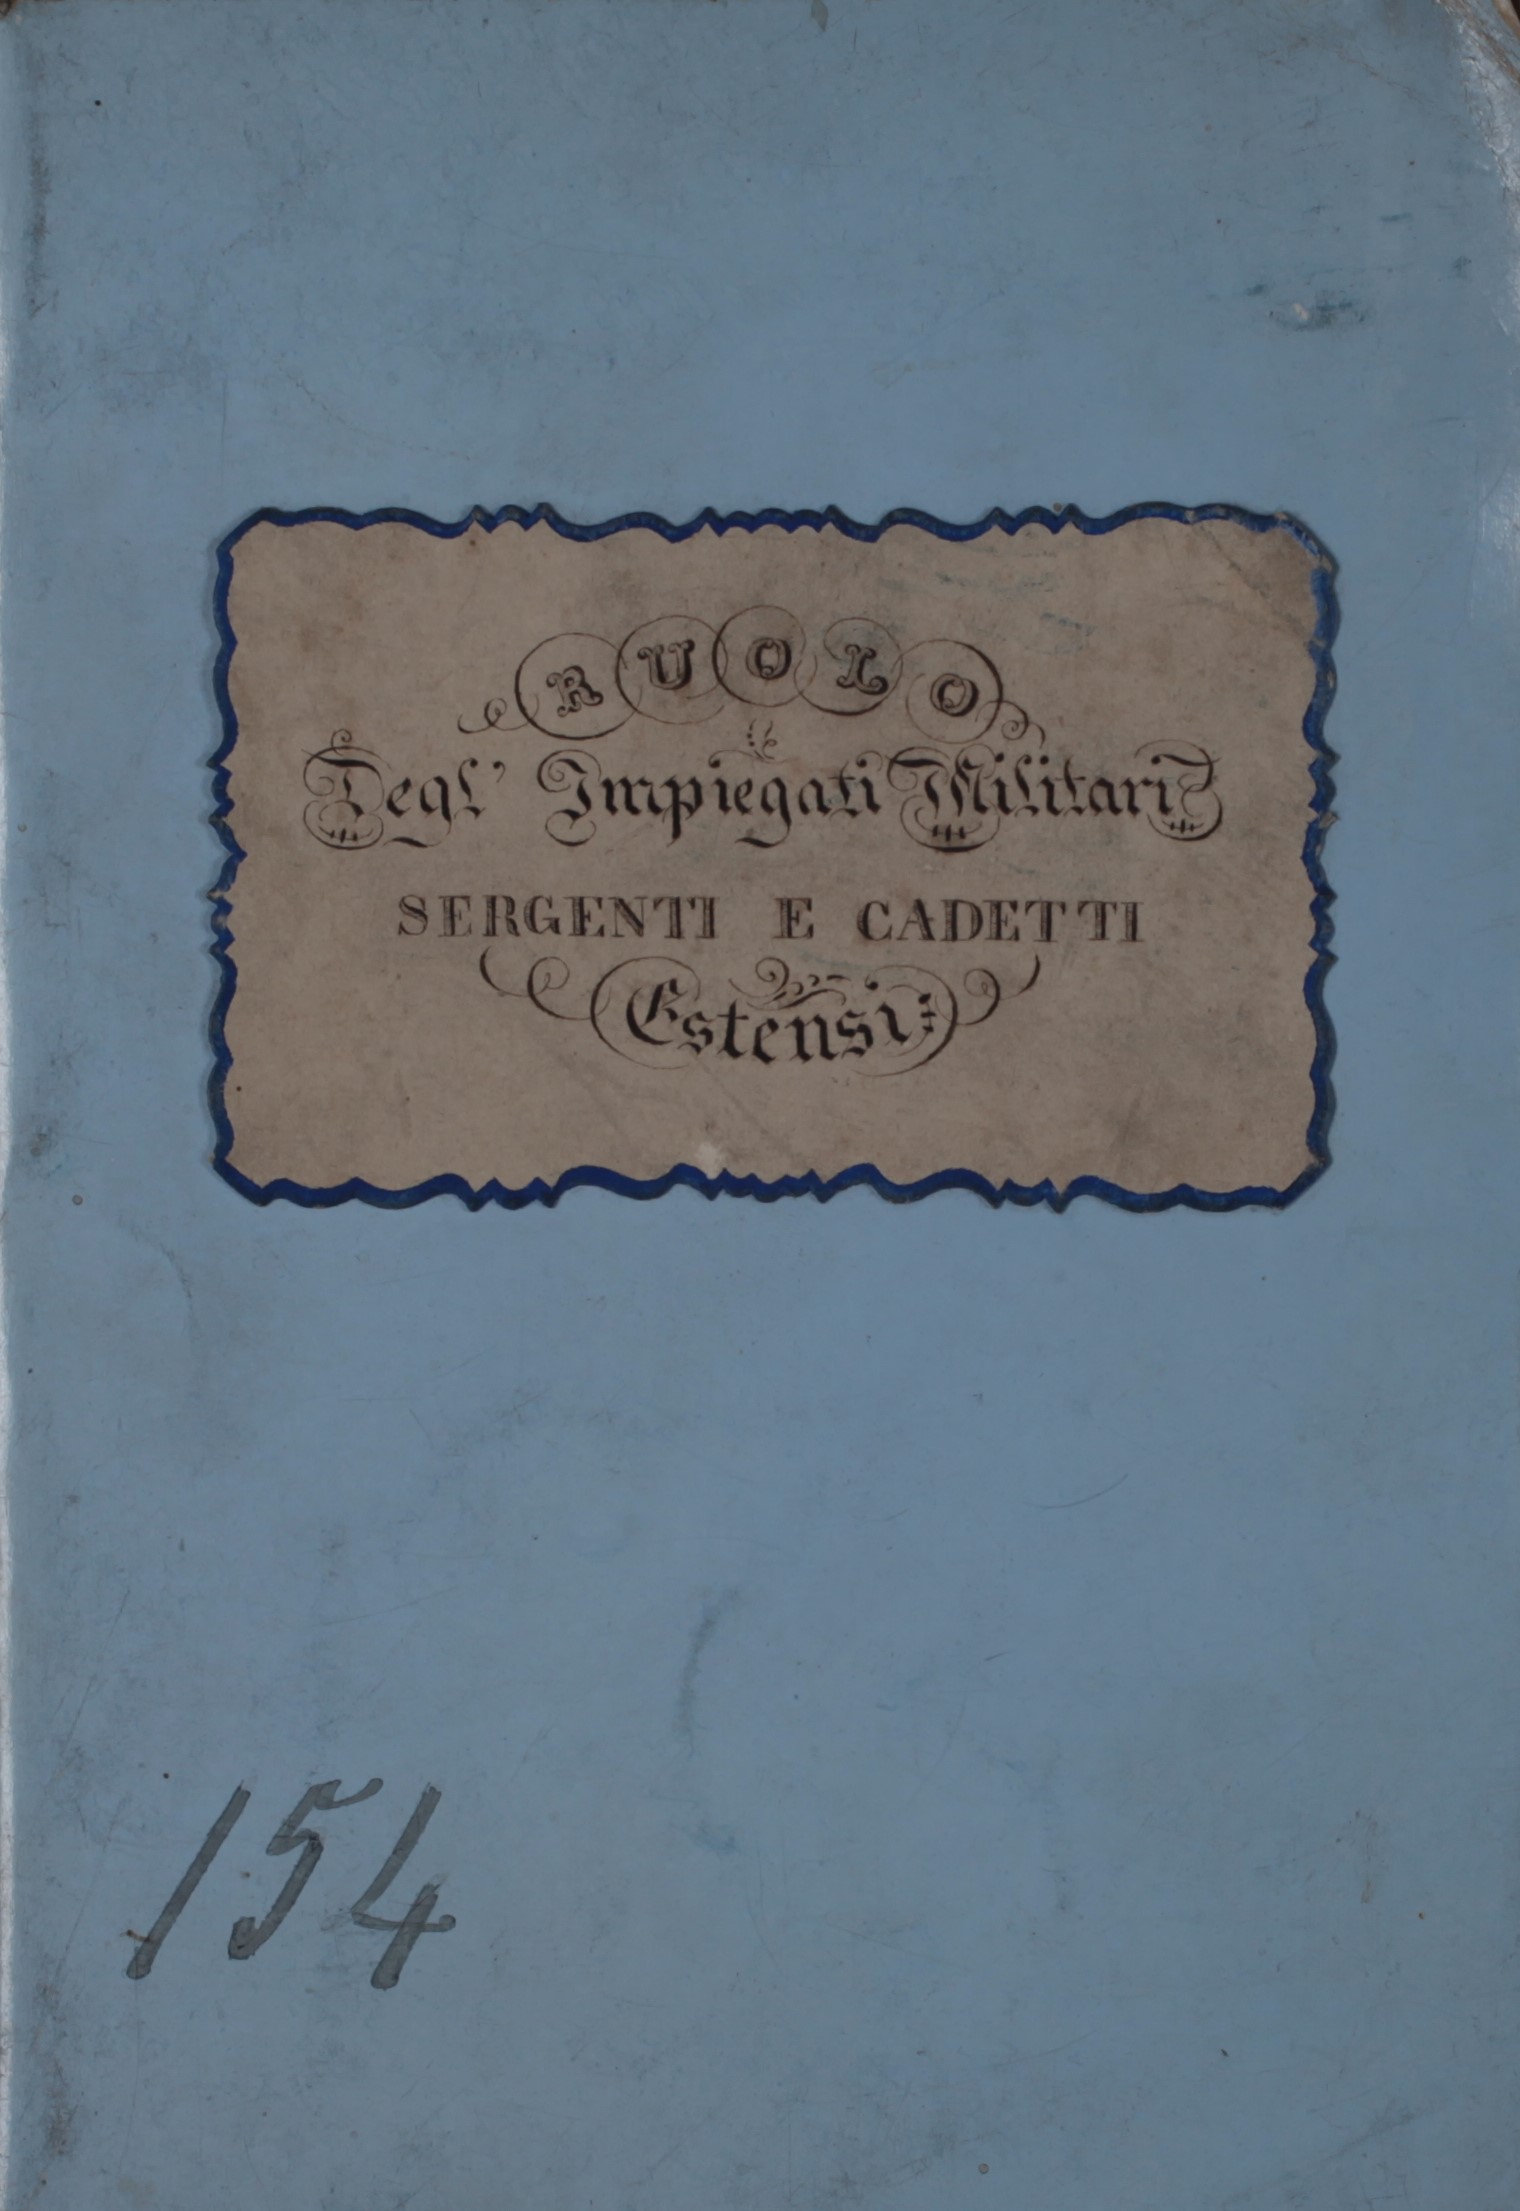 Registro «Ruolo degl'Impiegati Militari, Sergenti e Cadetti Estensi», 1863 (ASMo, Archivio Brigata Estense).